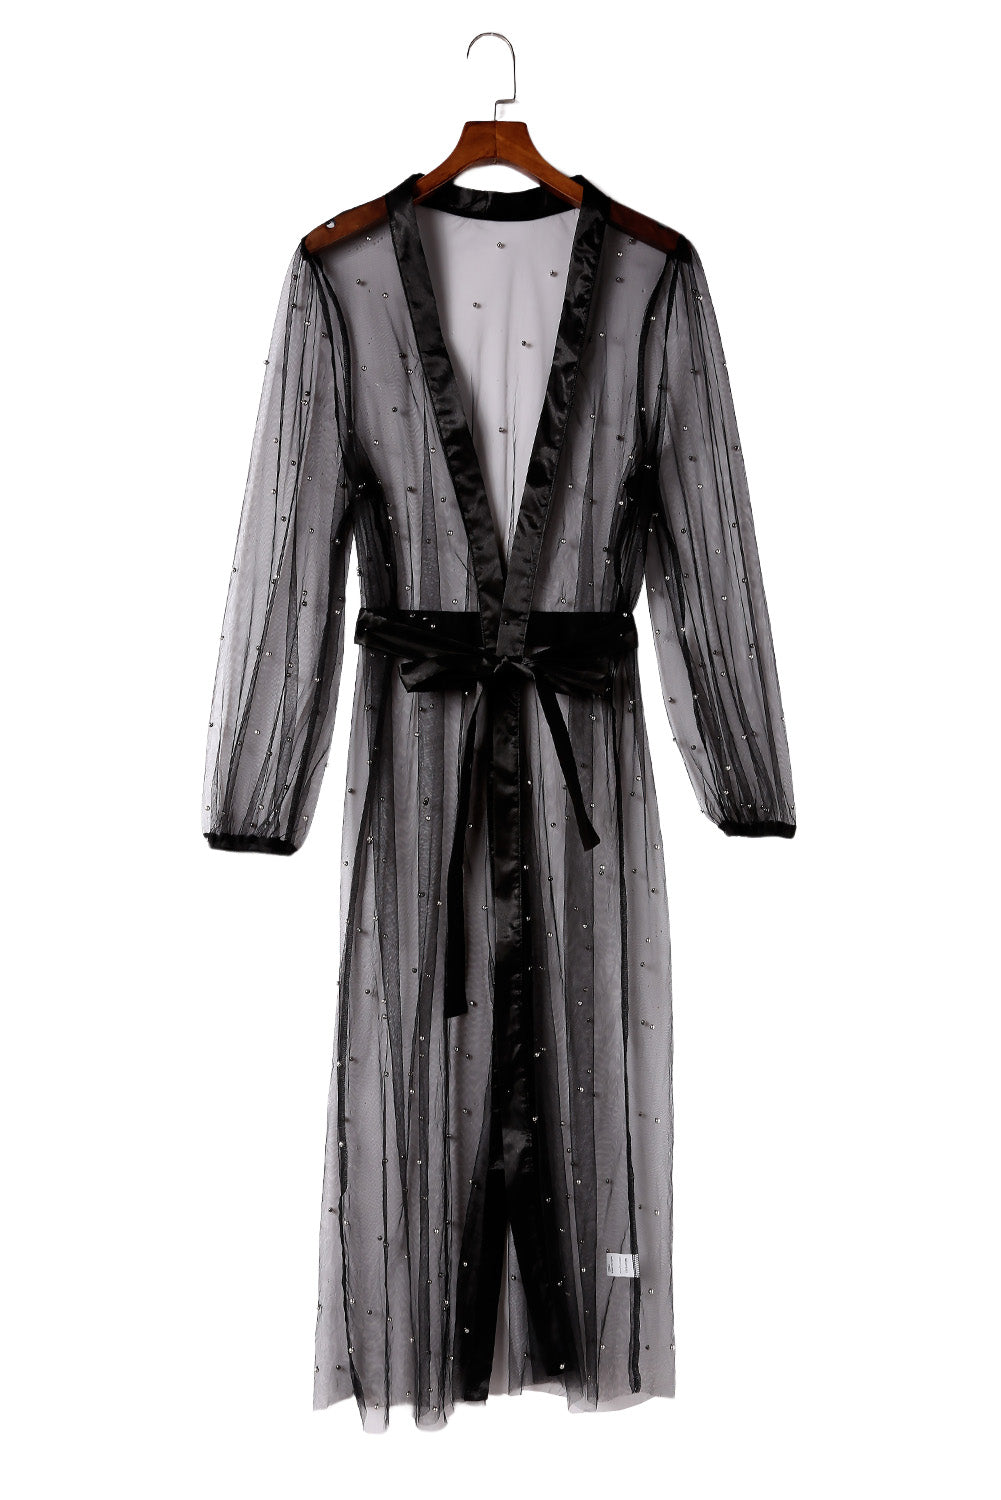 Crni kimono s prozirnim ukrasima od tila